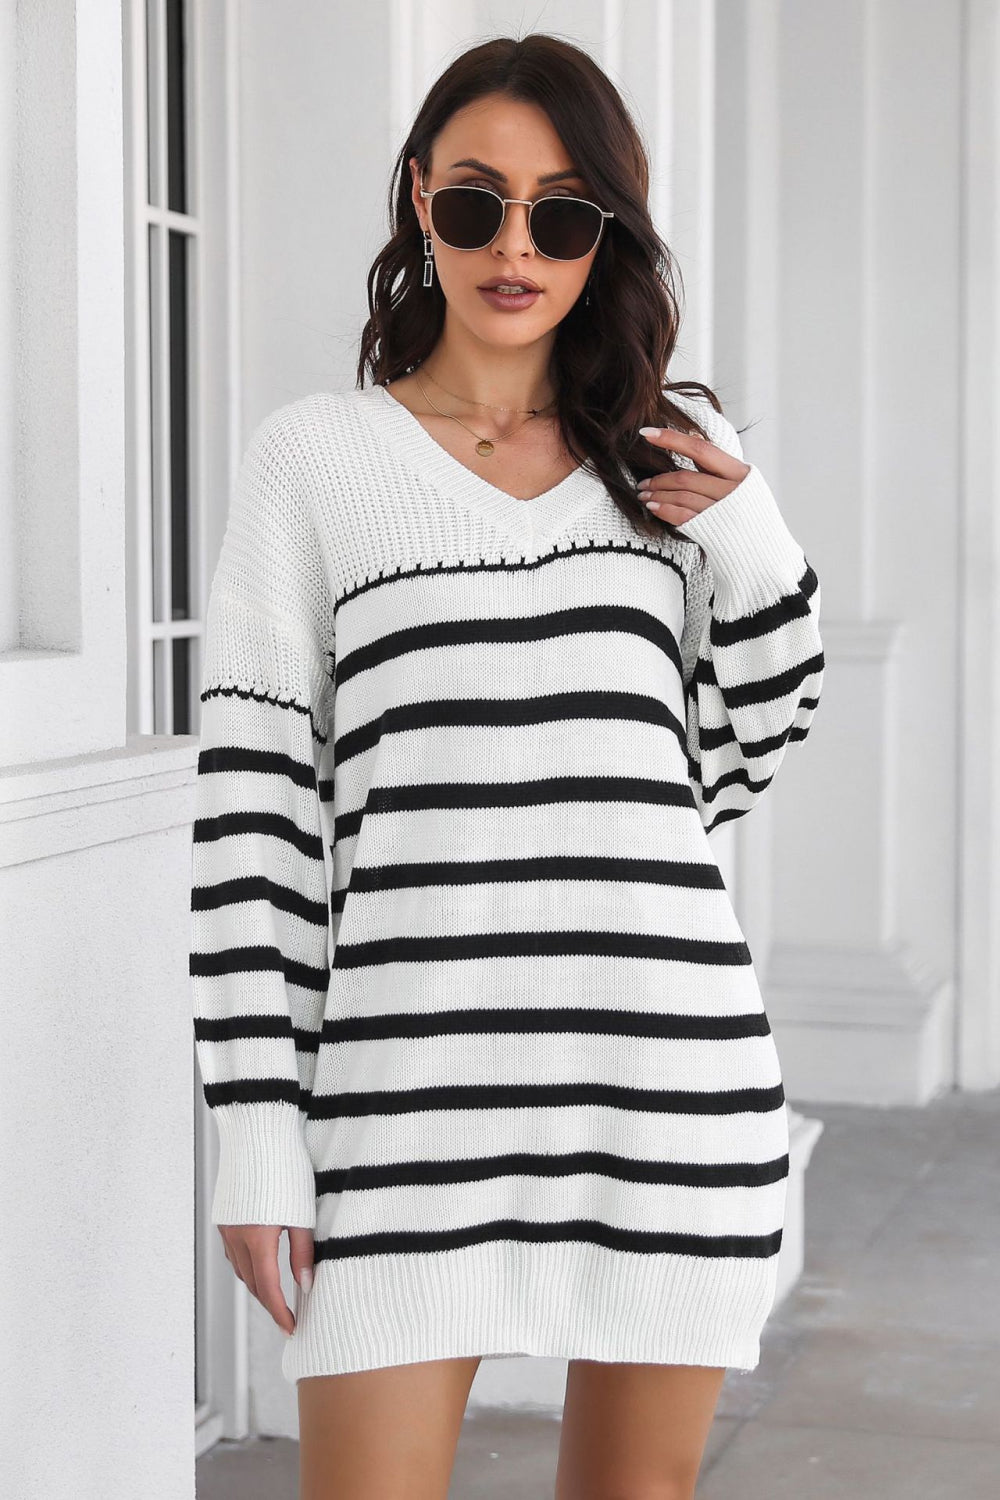 Striped V-Neck Drop Shulder Sweater Dress - Guy Christopher 